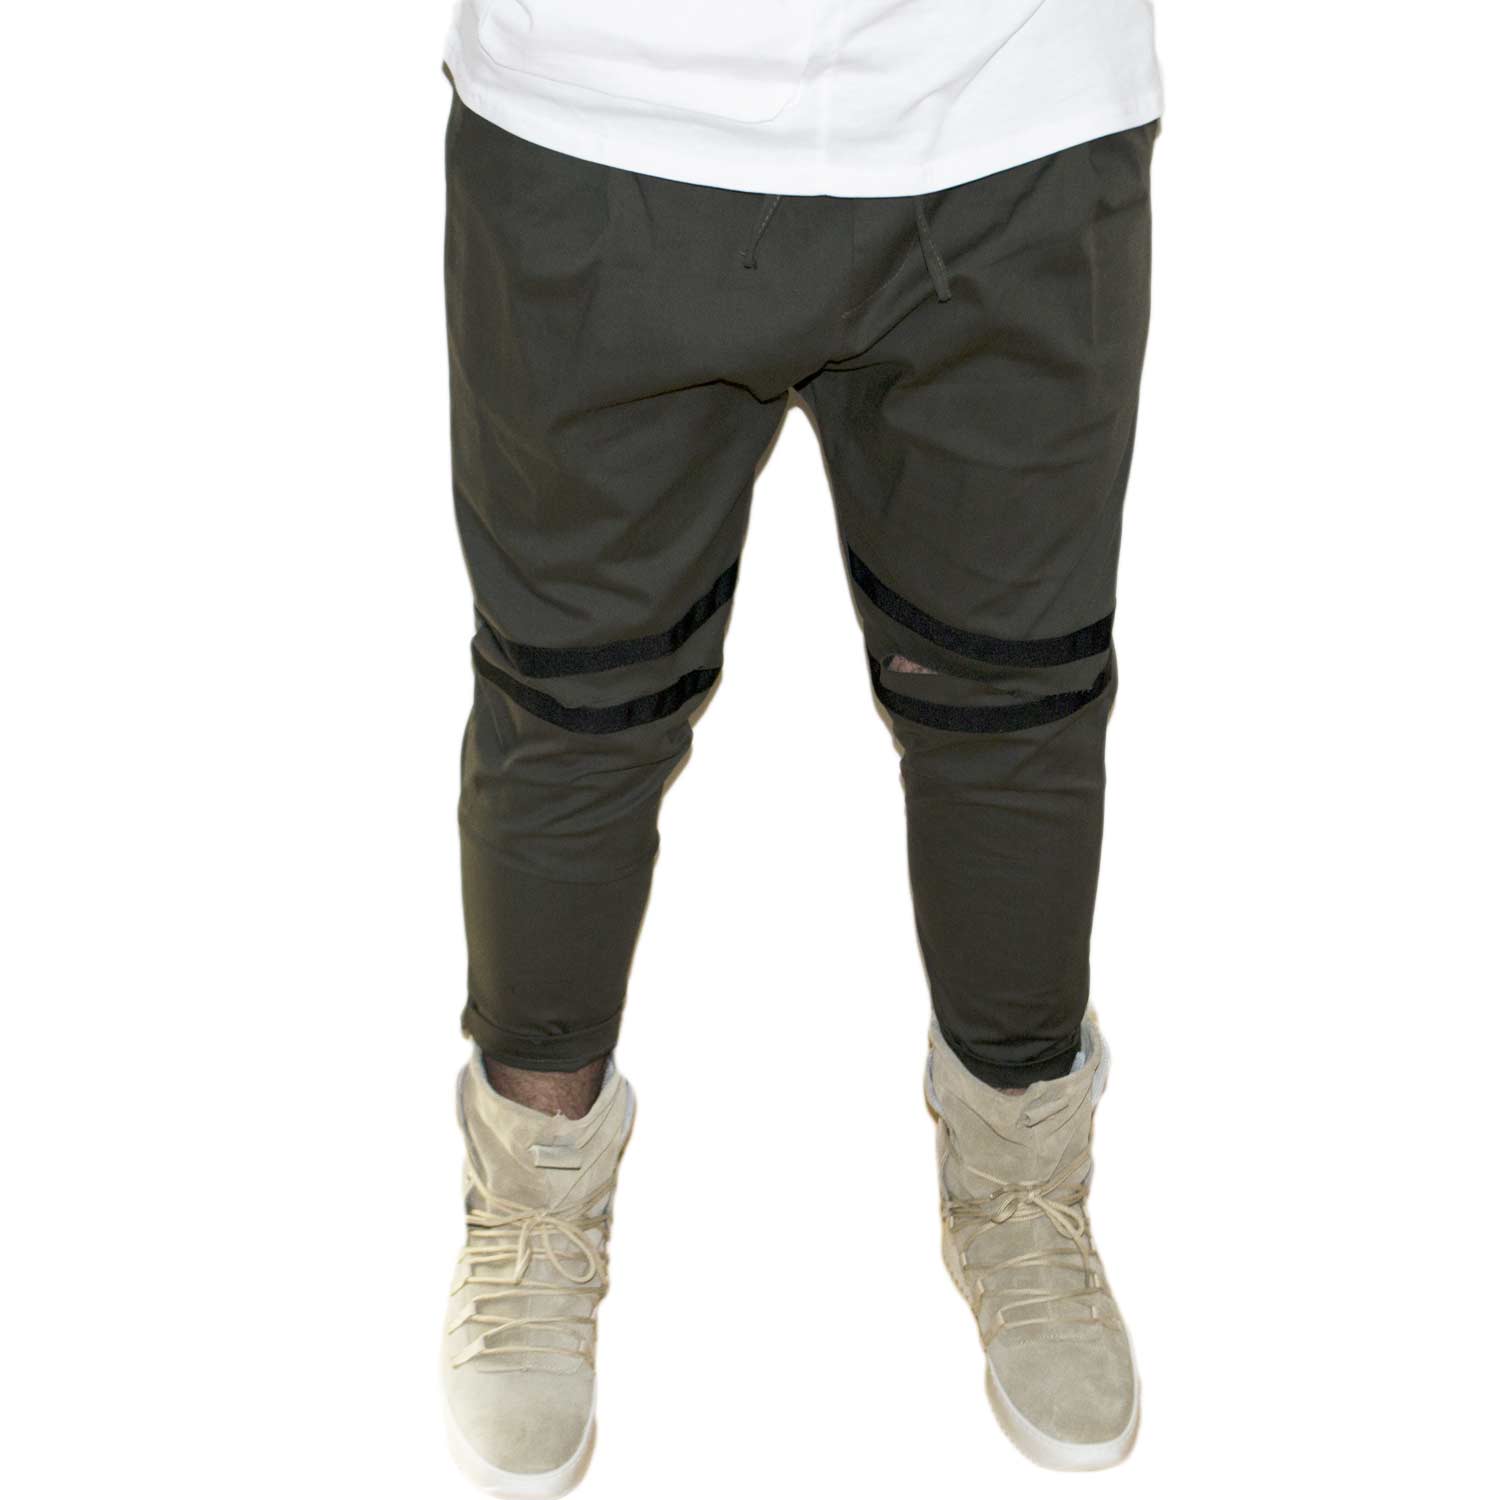 Pantaloni jogger verdi uomo con elastico e coulisse e tasche laterali strappi sul ginocchio striscia nera moda giovane